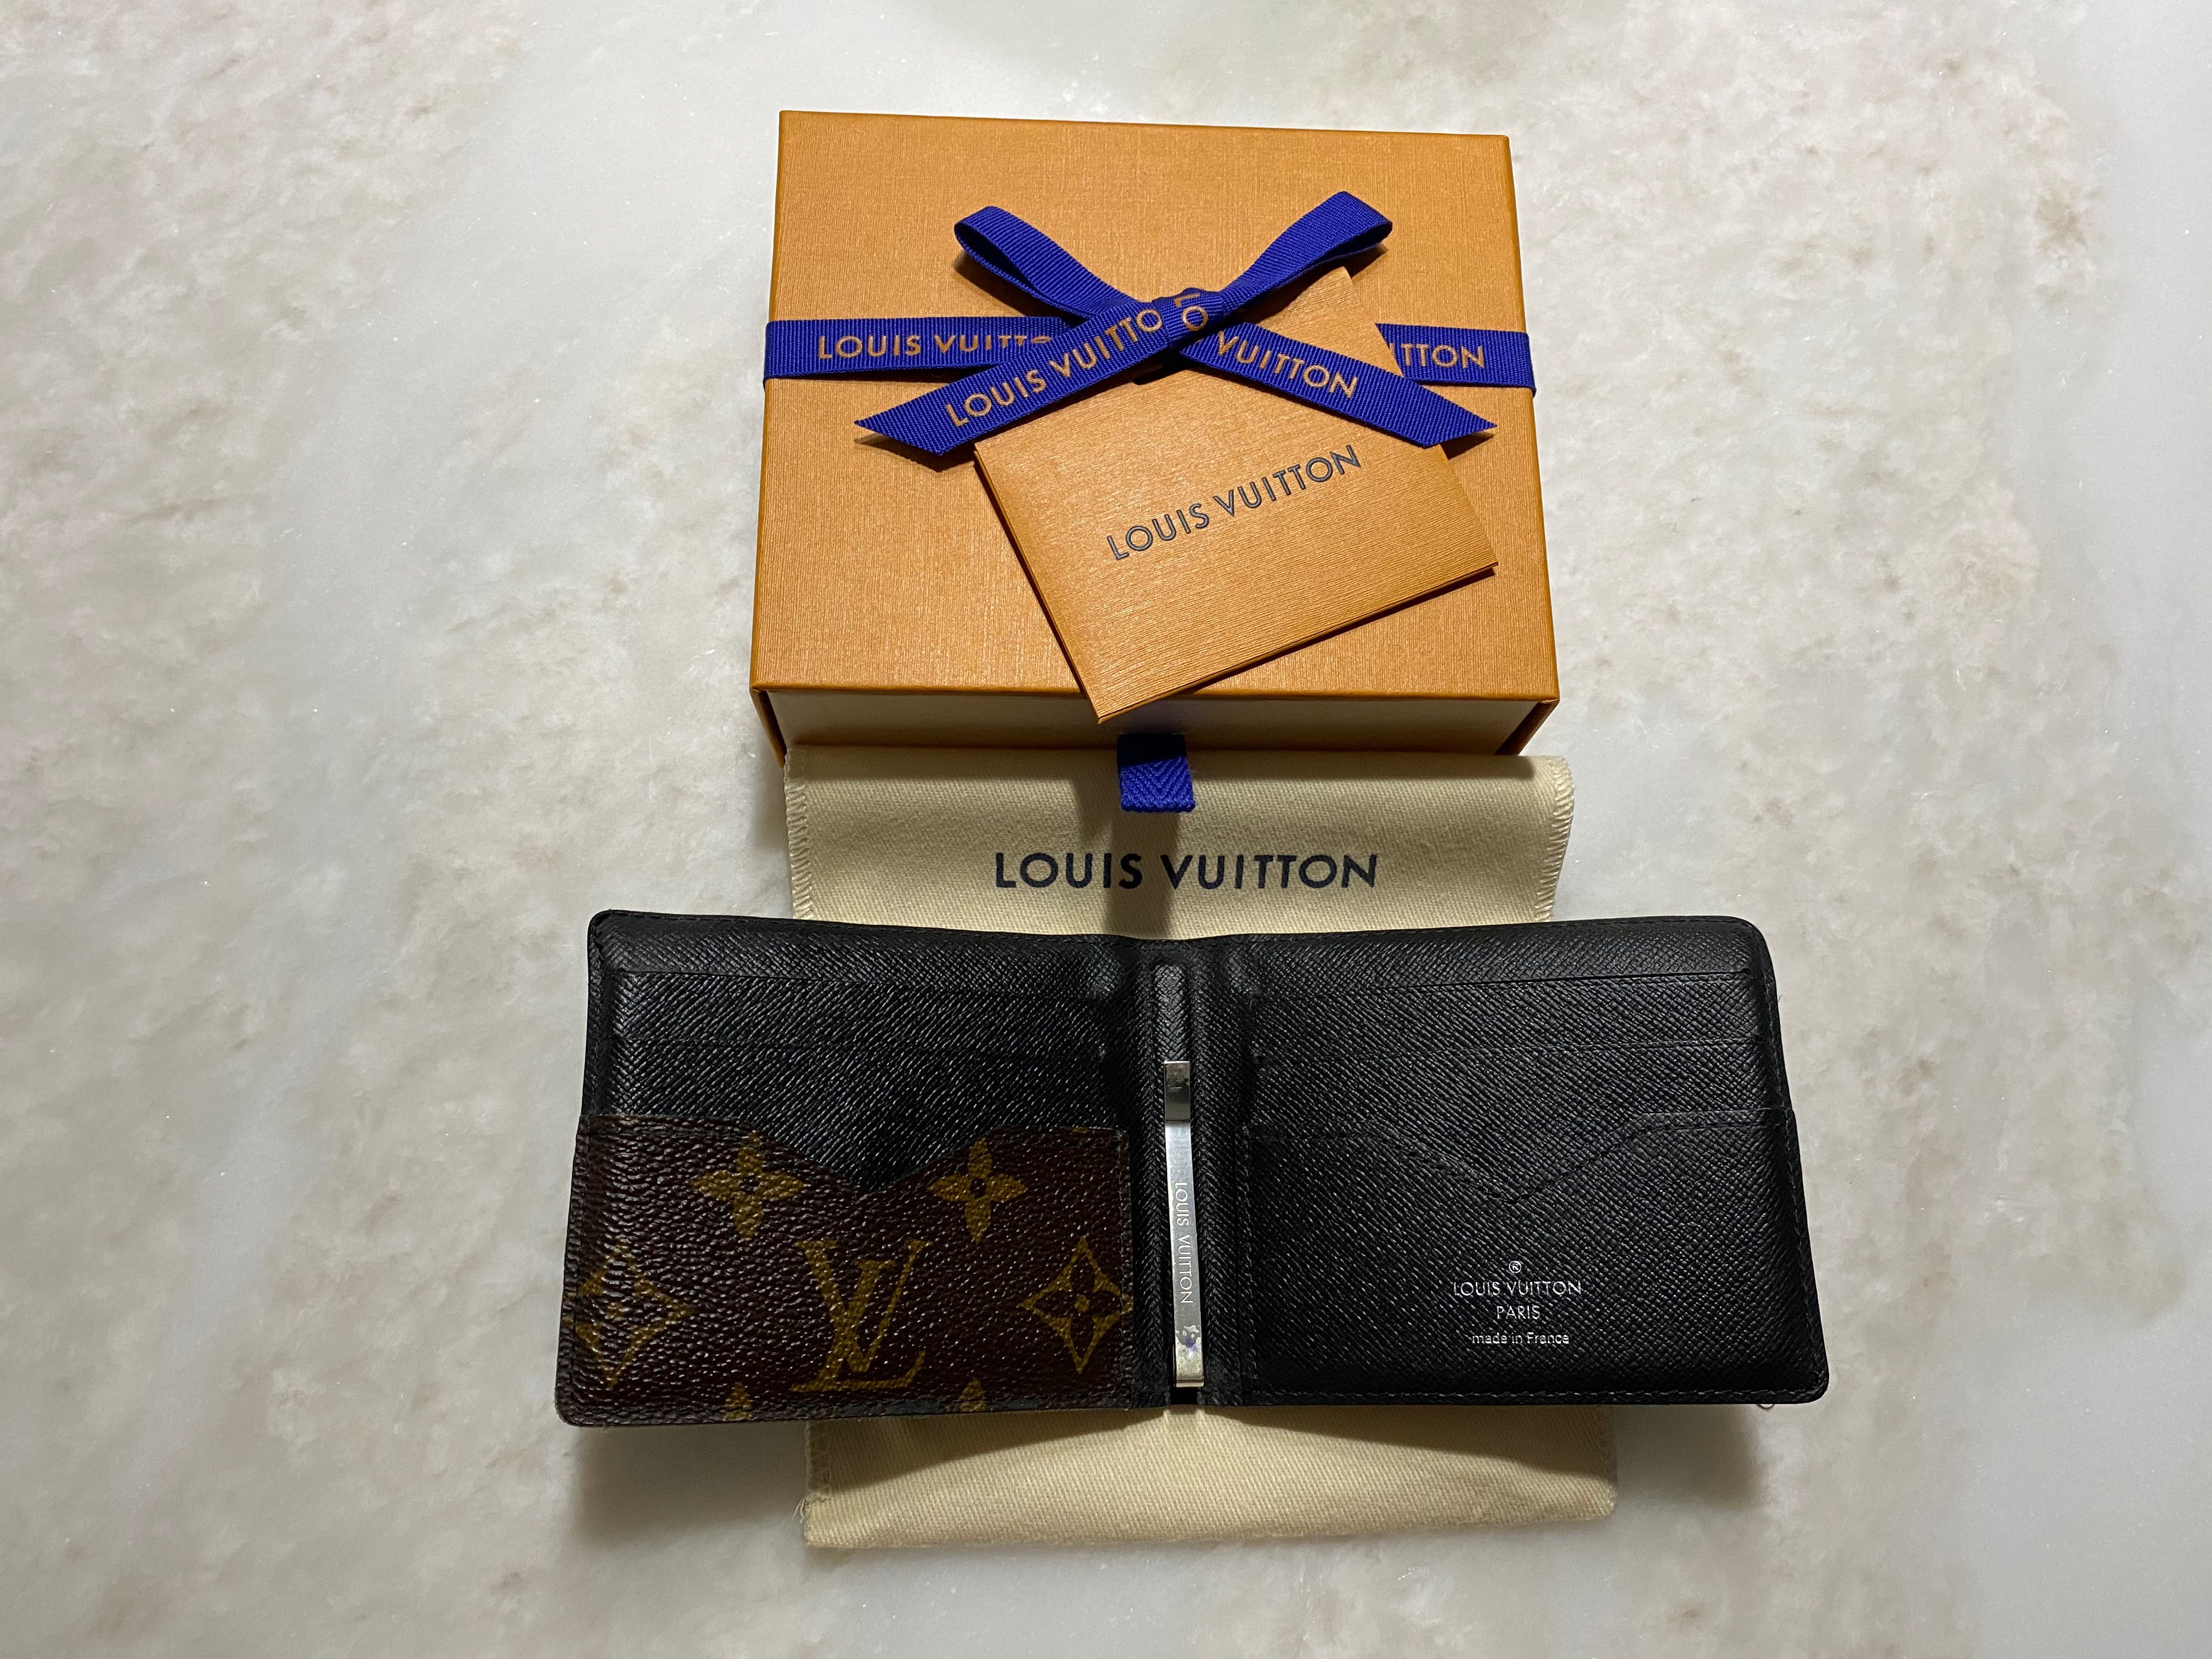 Louis Vuitton Money Clip Wallet